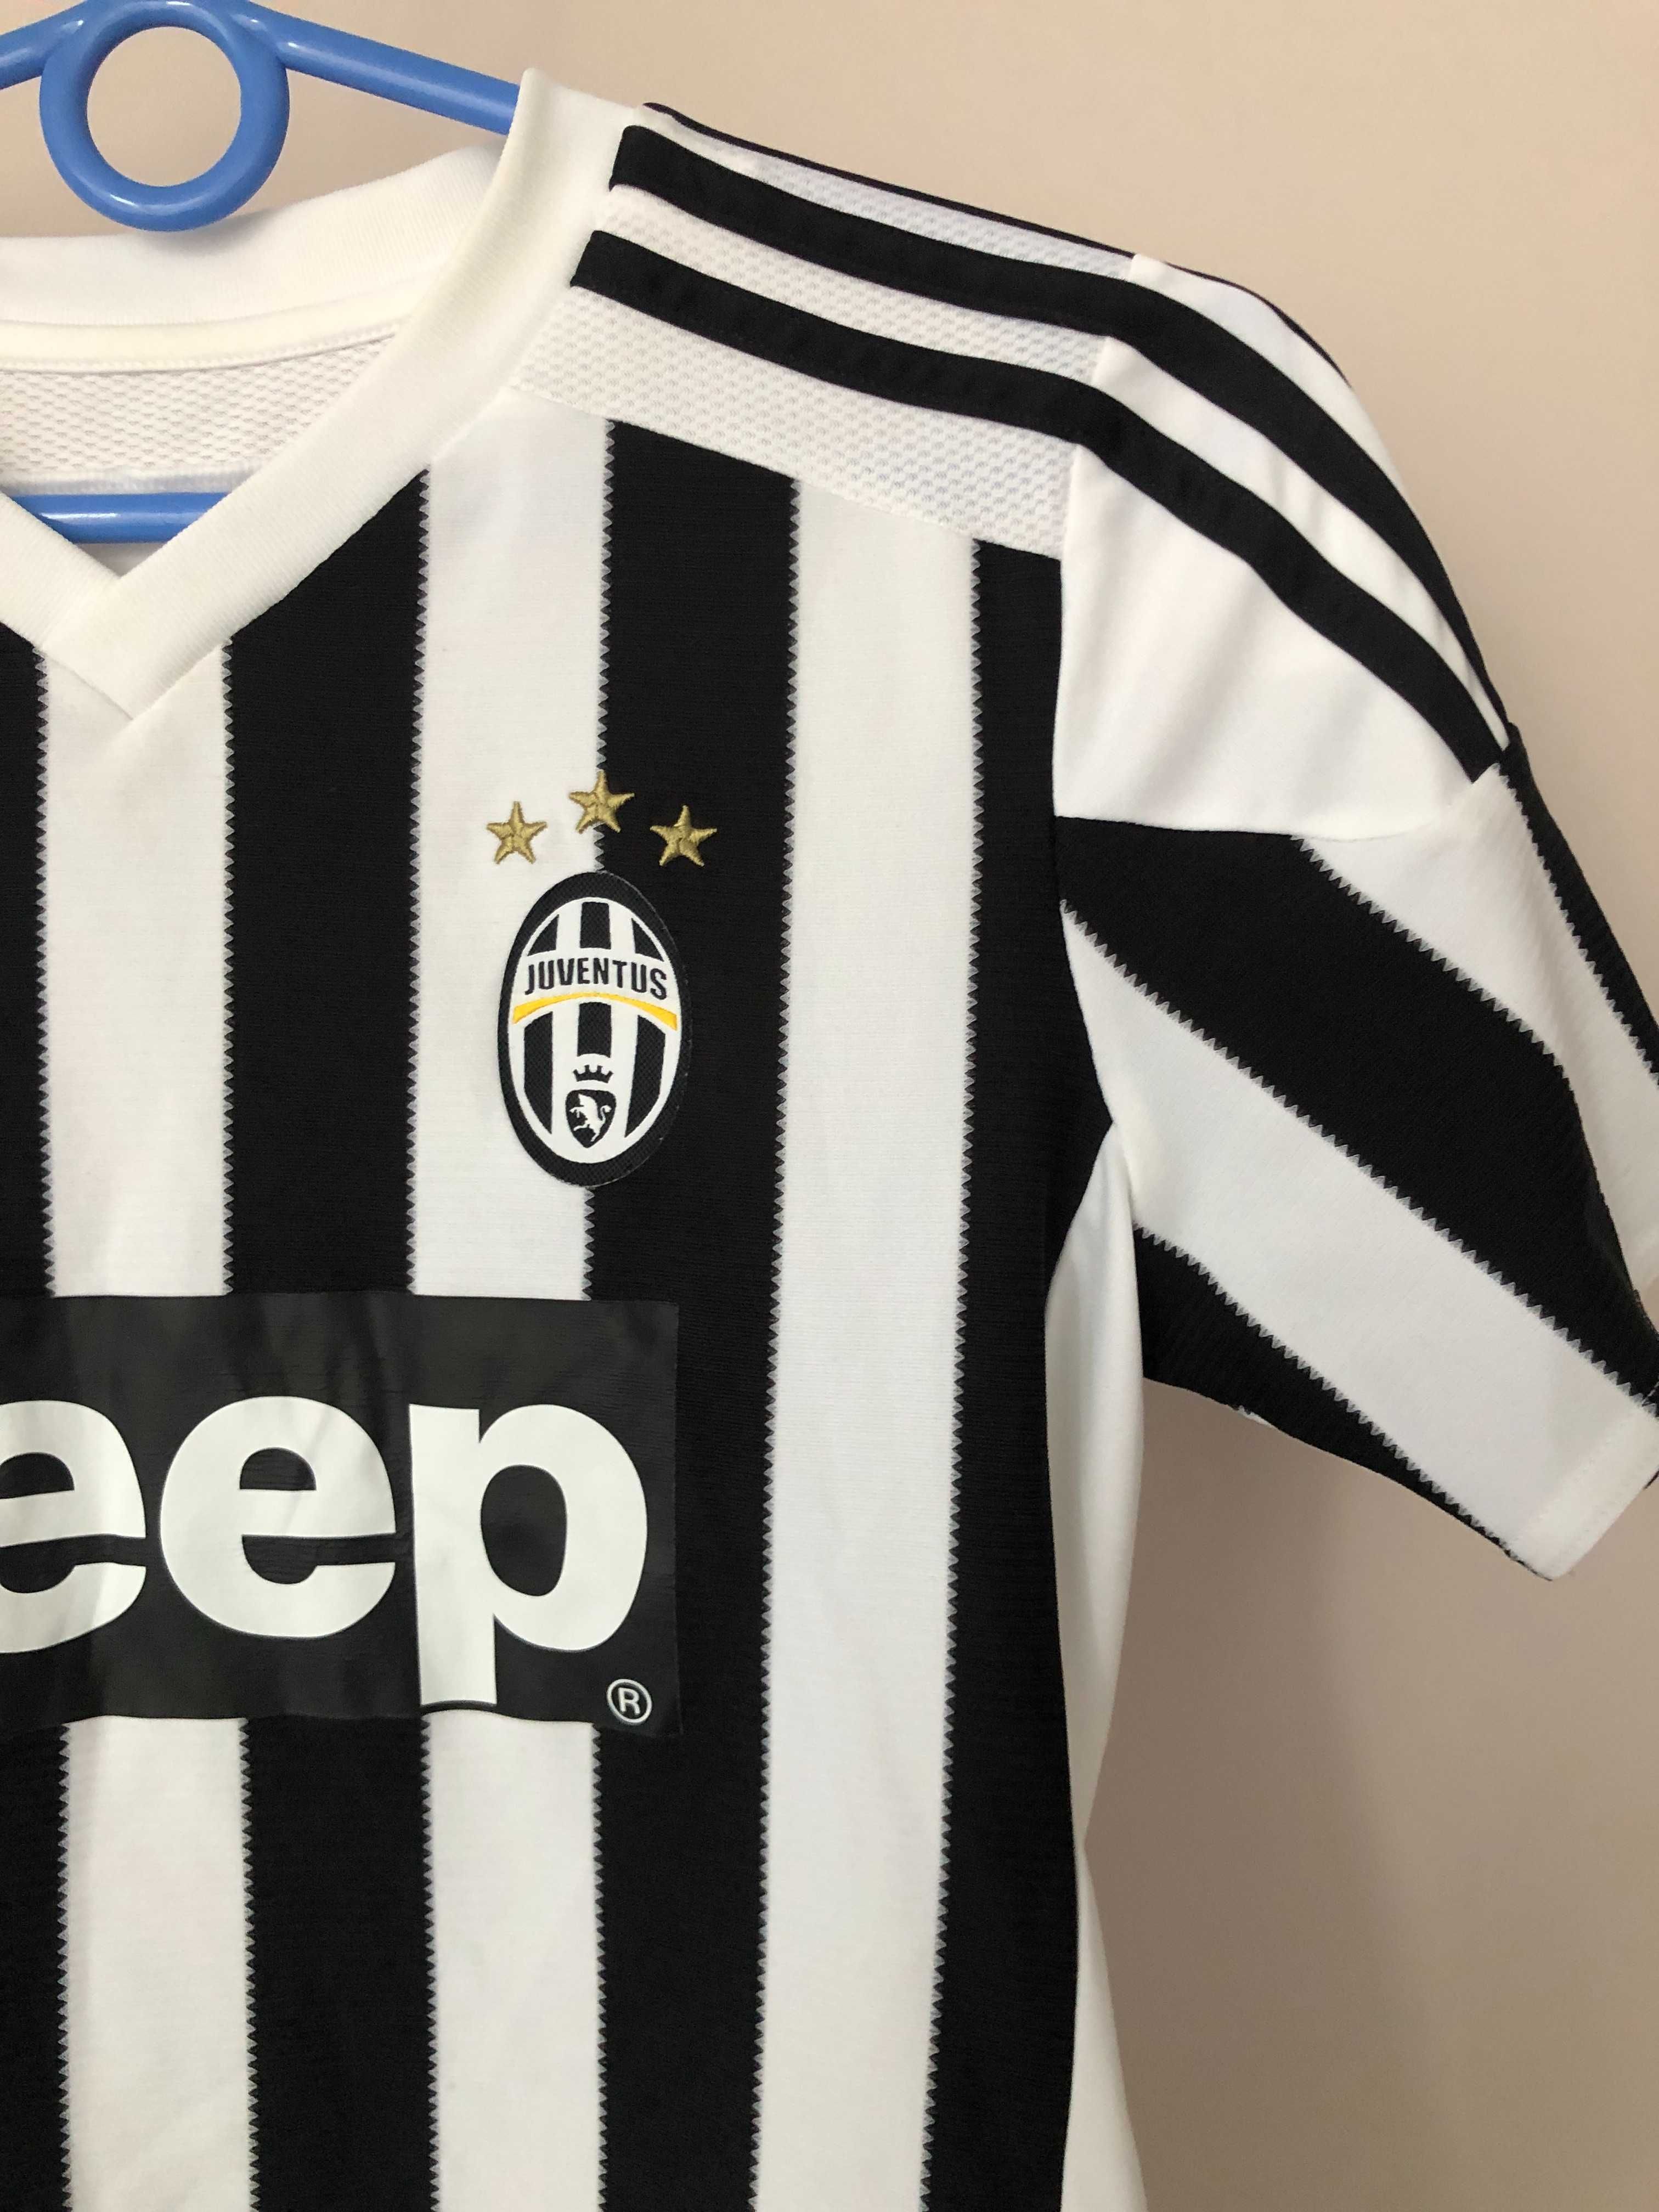 Дитяча футболка Adidas | Juventus, (р. 11/12 років)